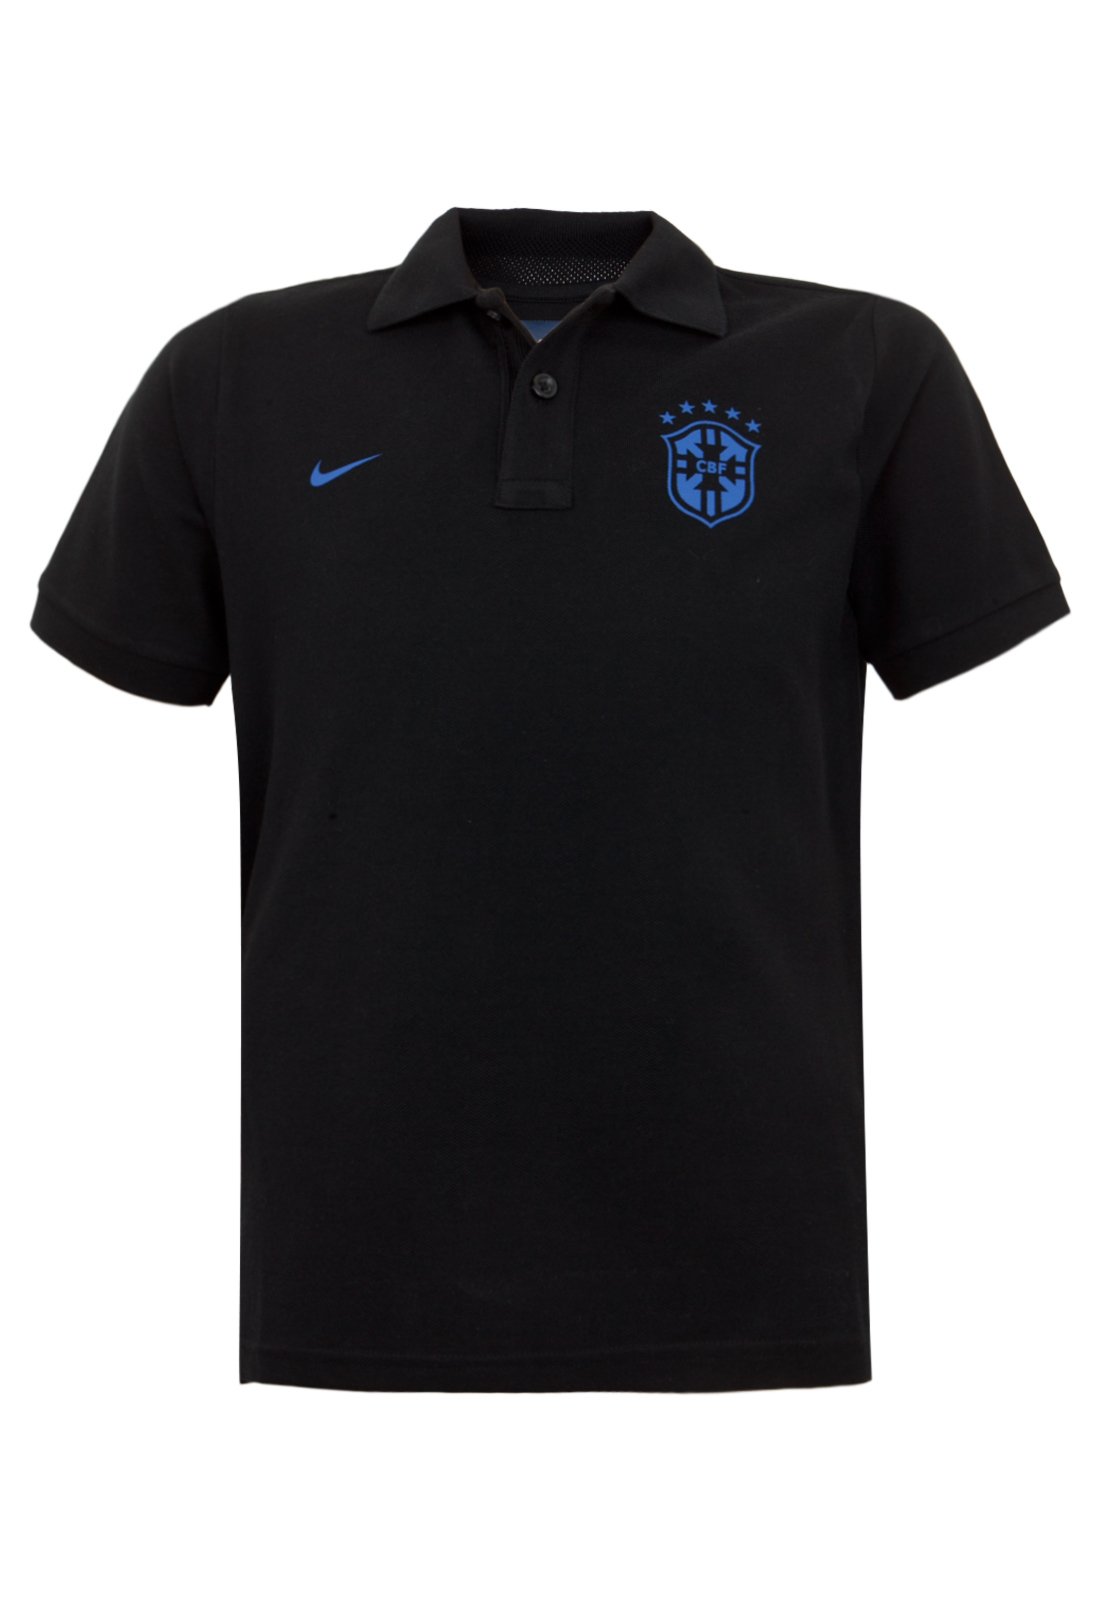 https://static.dafiti.com.br/p/Nike-Camisa-Polo-Nike-Brasil-Infantil-Preta-1216-4101141-1-zoom.jpg